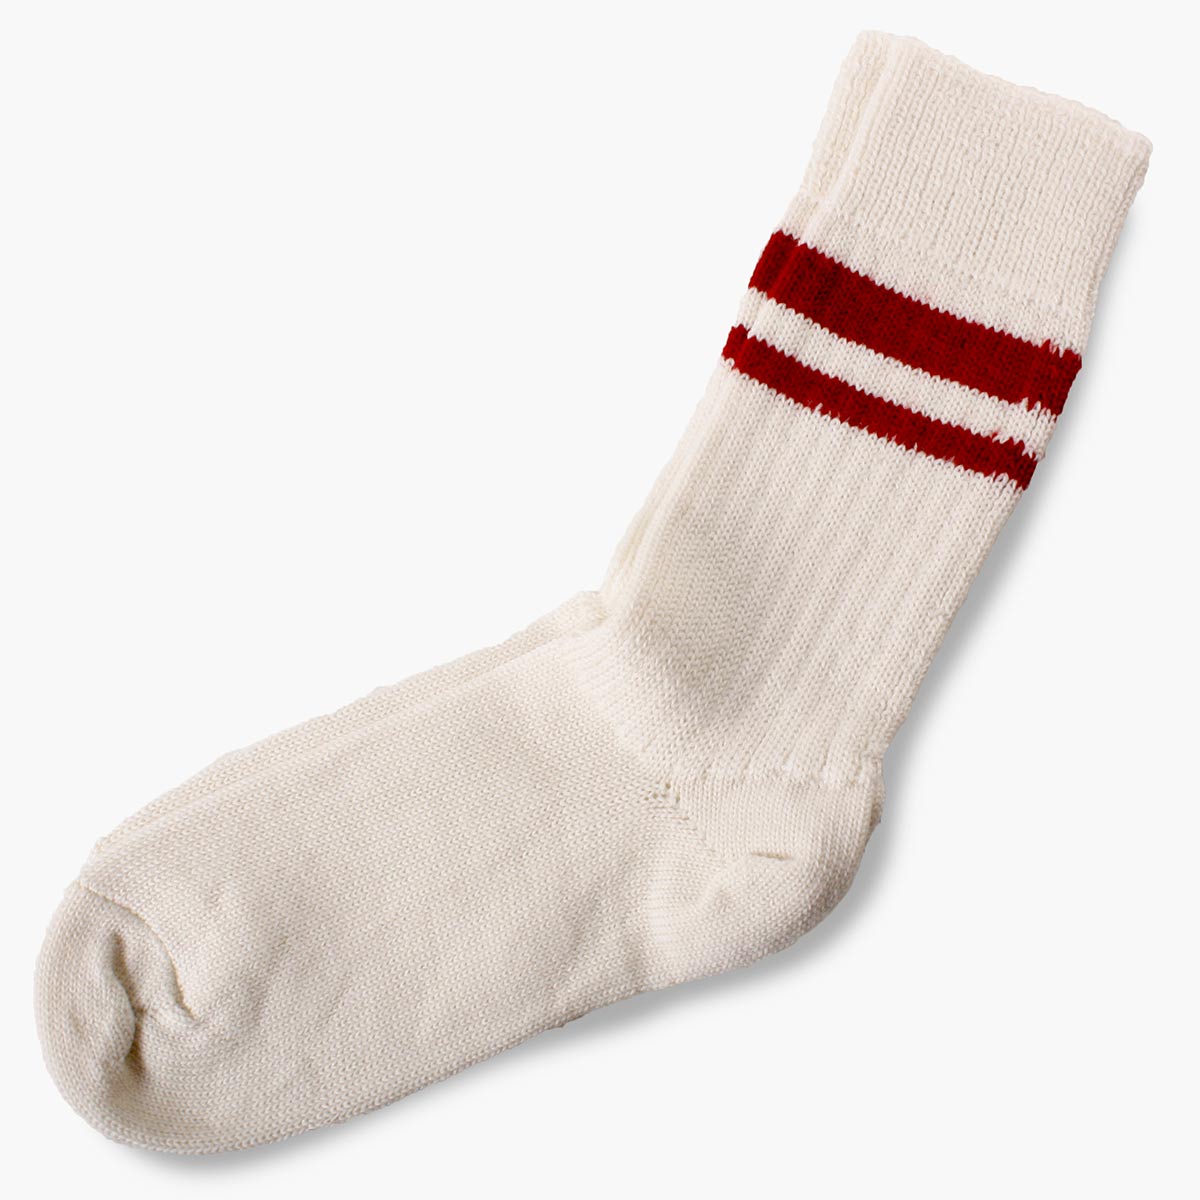 Wollen damessokken met rode strepen/sokken van wol